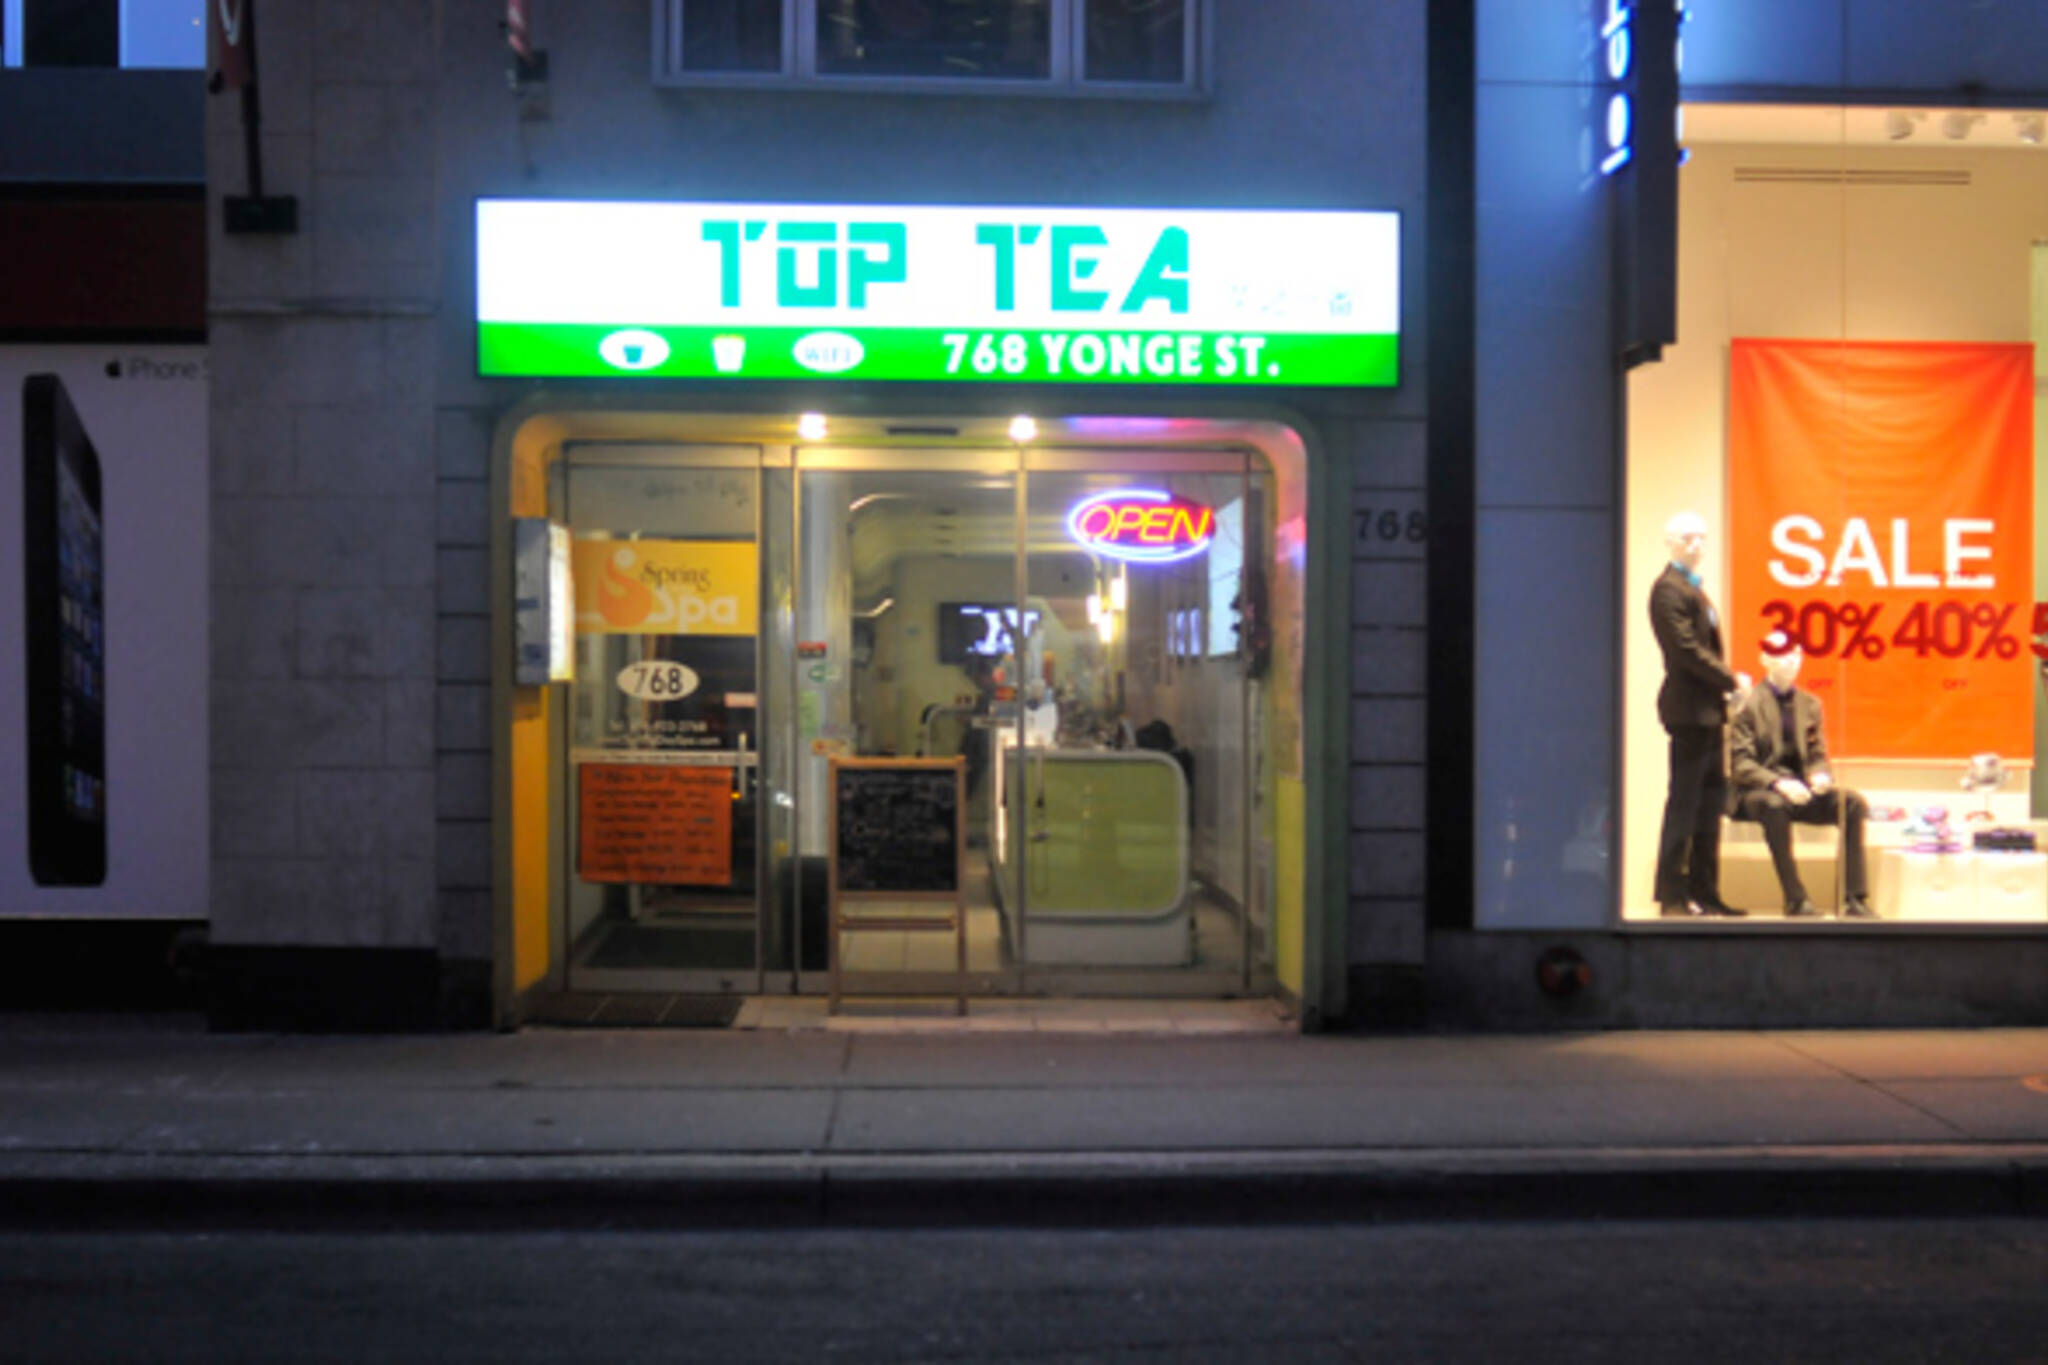 Top Tea Toronto